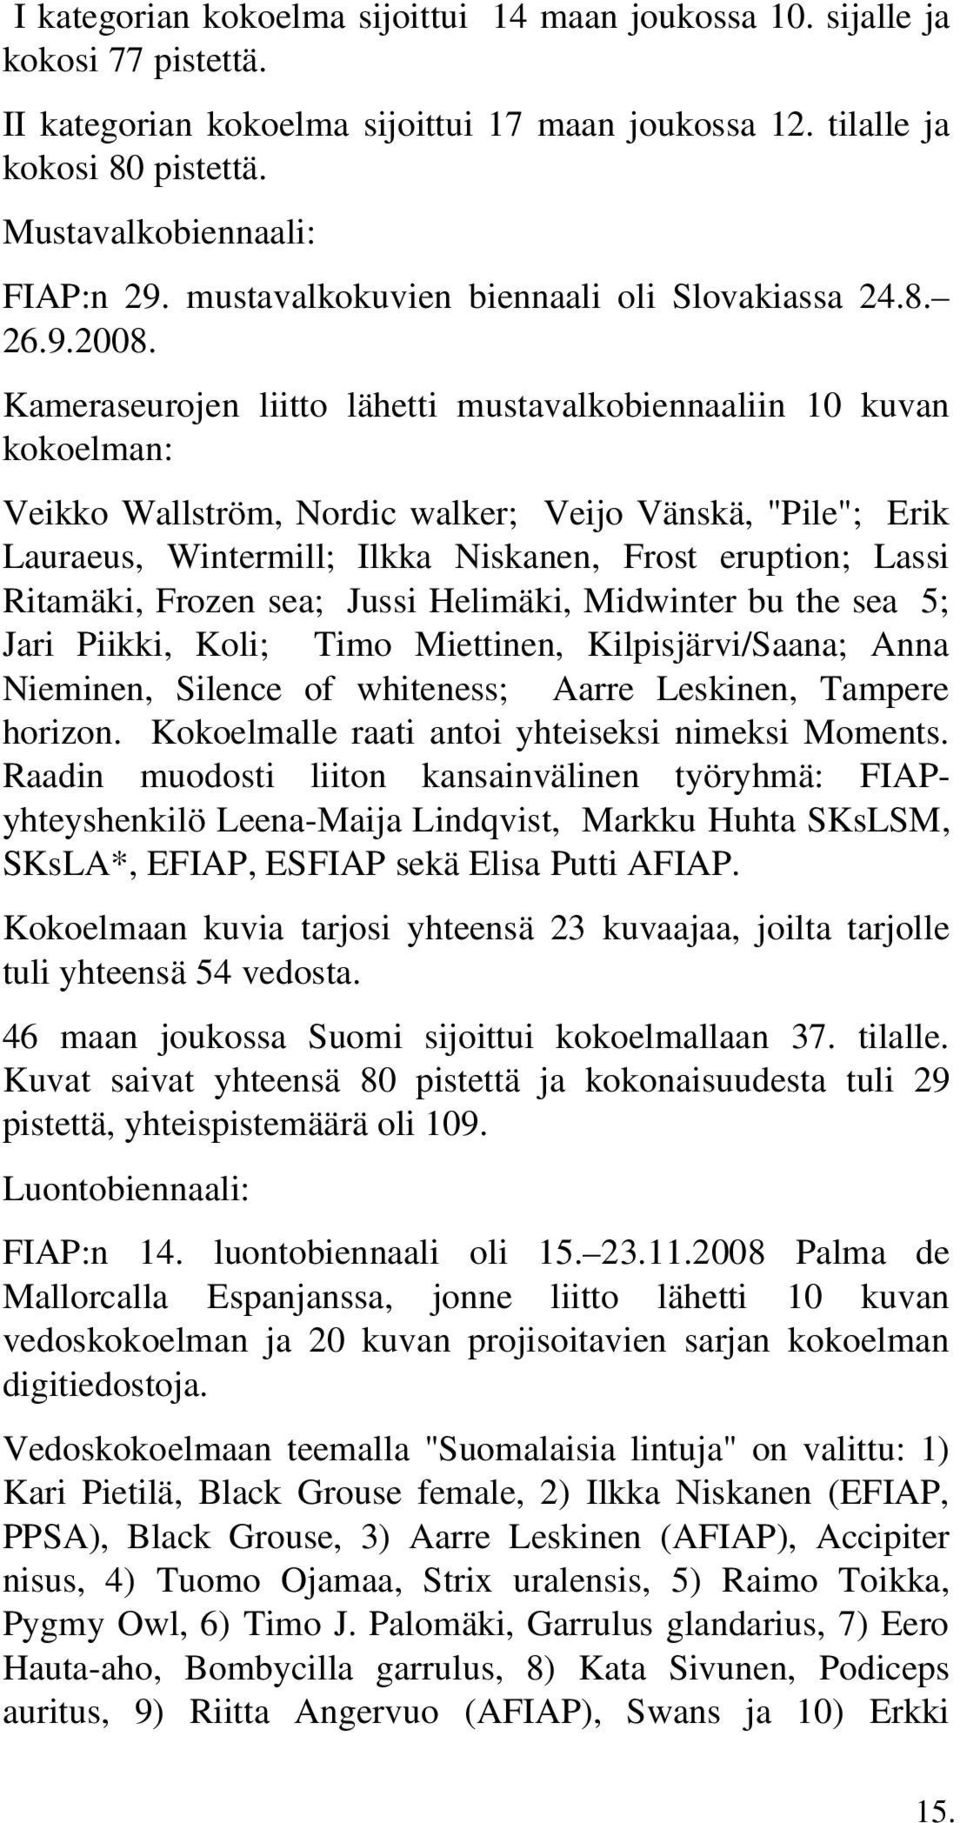 Kameraseurojen liitto lähetti mustavalkobiennaaliin 10 kuvan kokoelman: Veikko Wallström, Nordic walker; Veijo Vänskä, "Pile"; Erik Lauraeus, Wintermill; Ilkka Niskanen, Frost eruption; Lassi